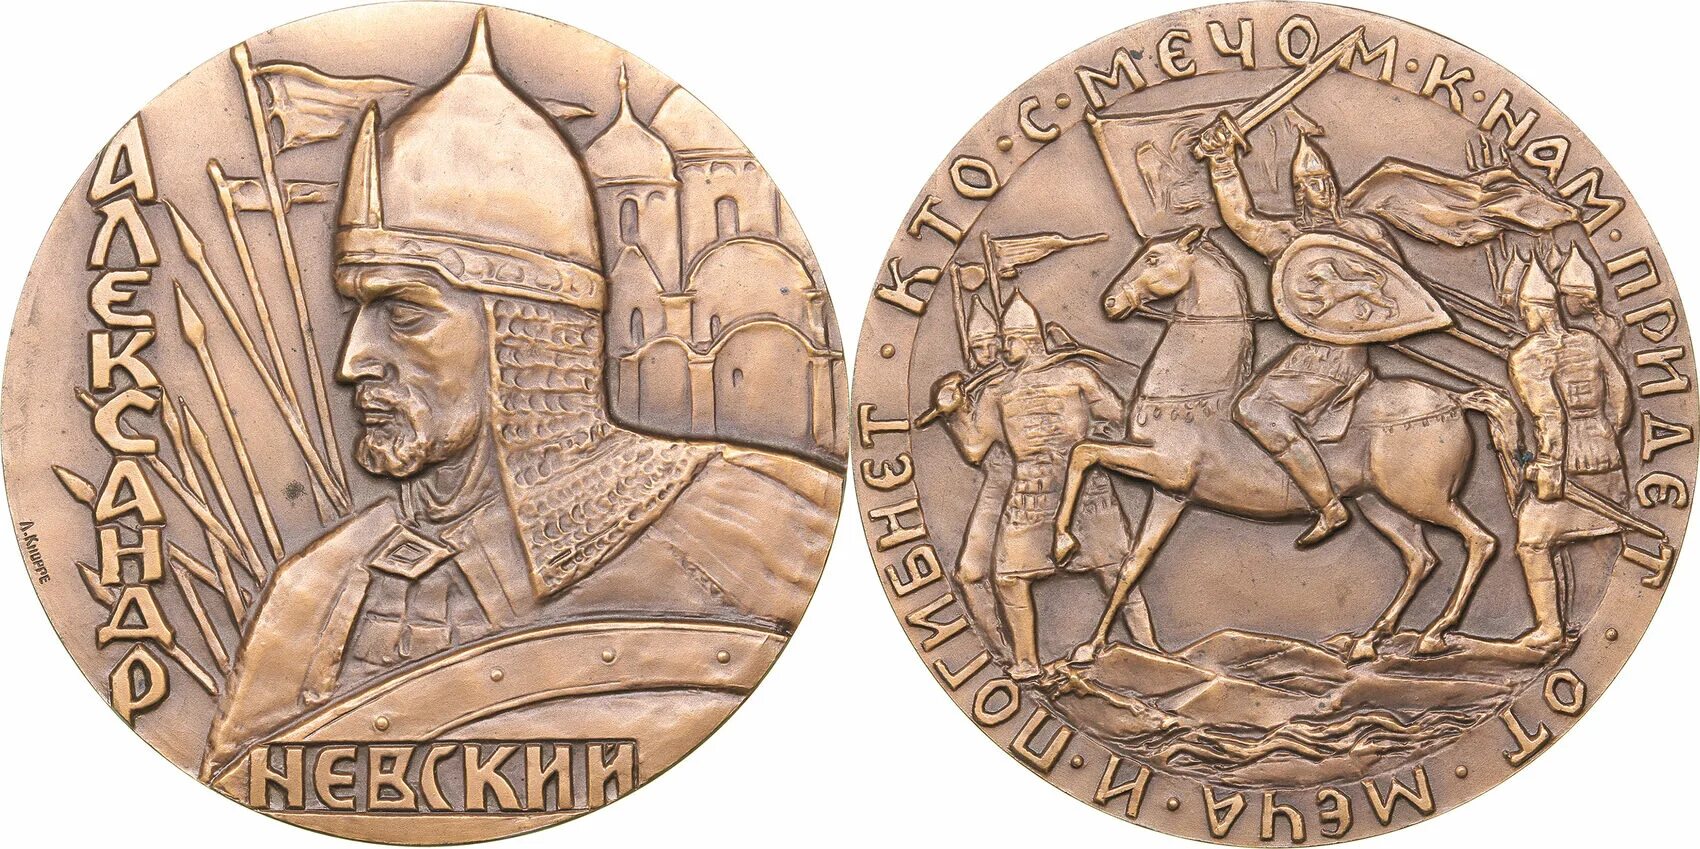 Монета памяти победы. Медаль 725 лет ледовому побоищу.